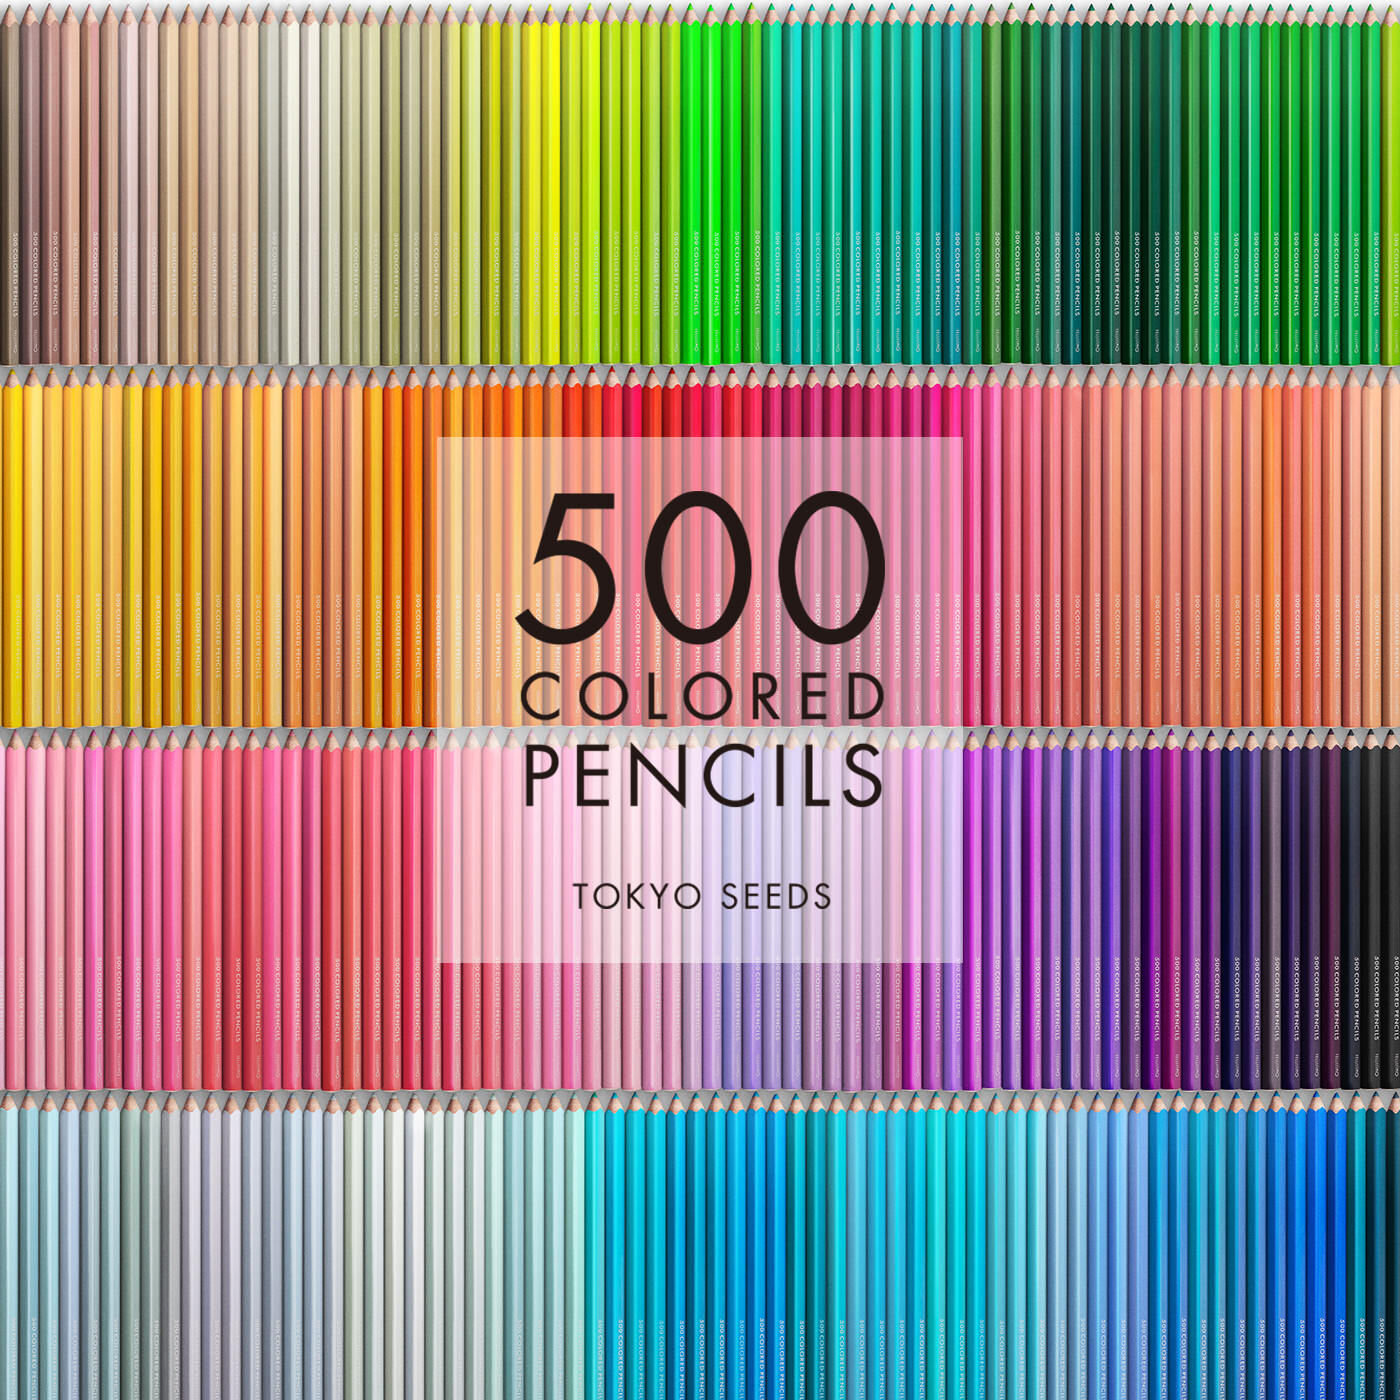 Real Stock|【93/500 DOUBLE DENIM】500色の色えんぴつ TOKYO SEEDS|1992年、世界初の「500色」という膨大な色数の色えんぴつが誕生して以来、その販売数は発売当初から合わせると、世界55ヵ国10万セット以上。今回、メイド・イン・ジャパンにこだわり、すべてが新しく生まれ変わって登場しました。